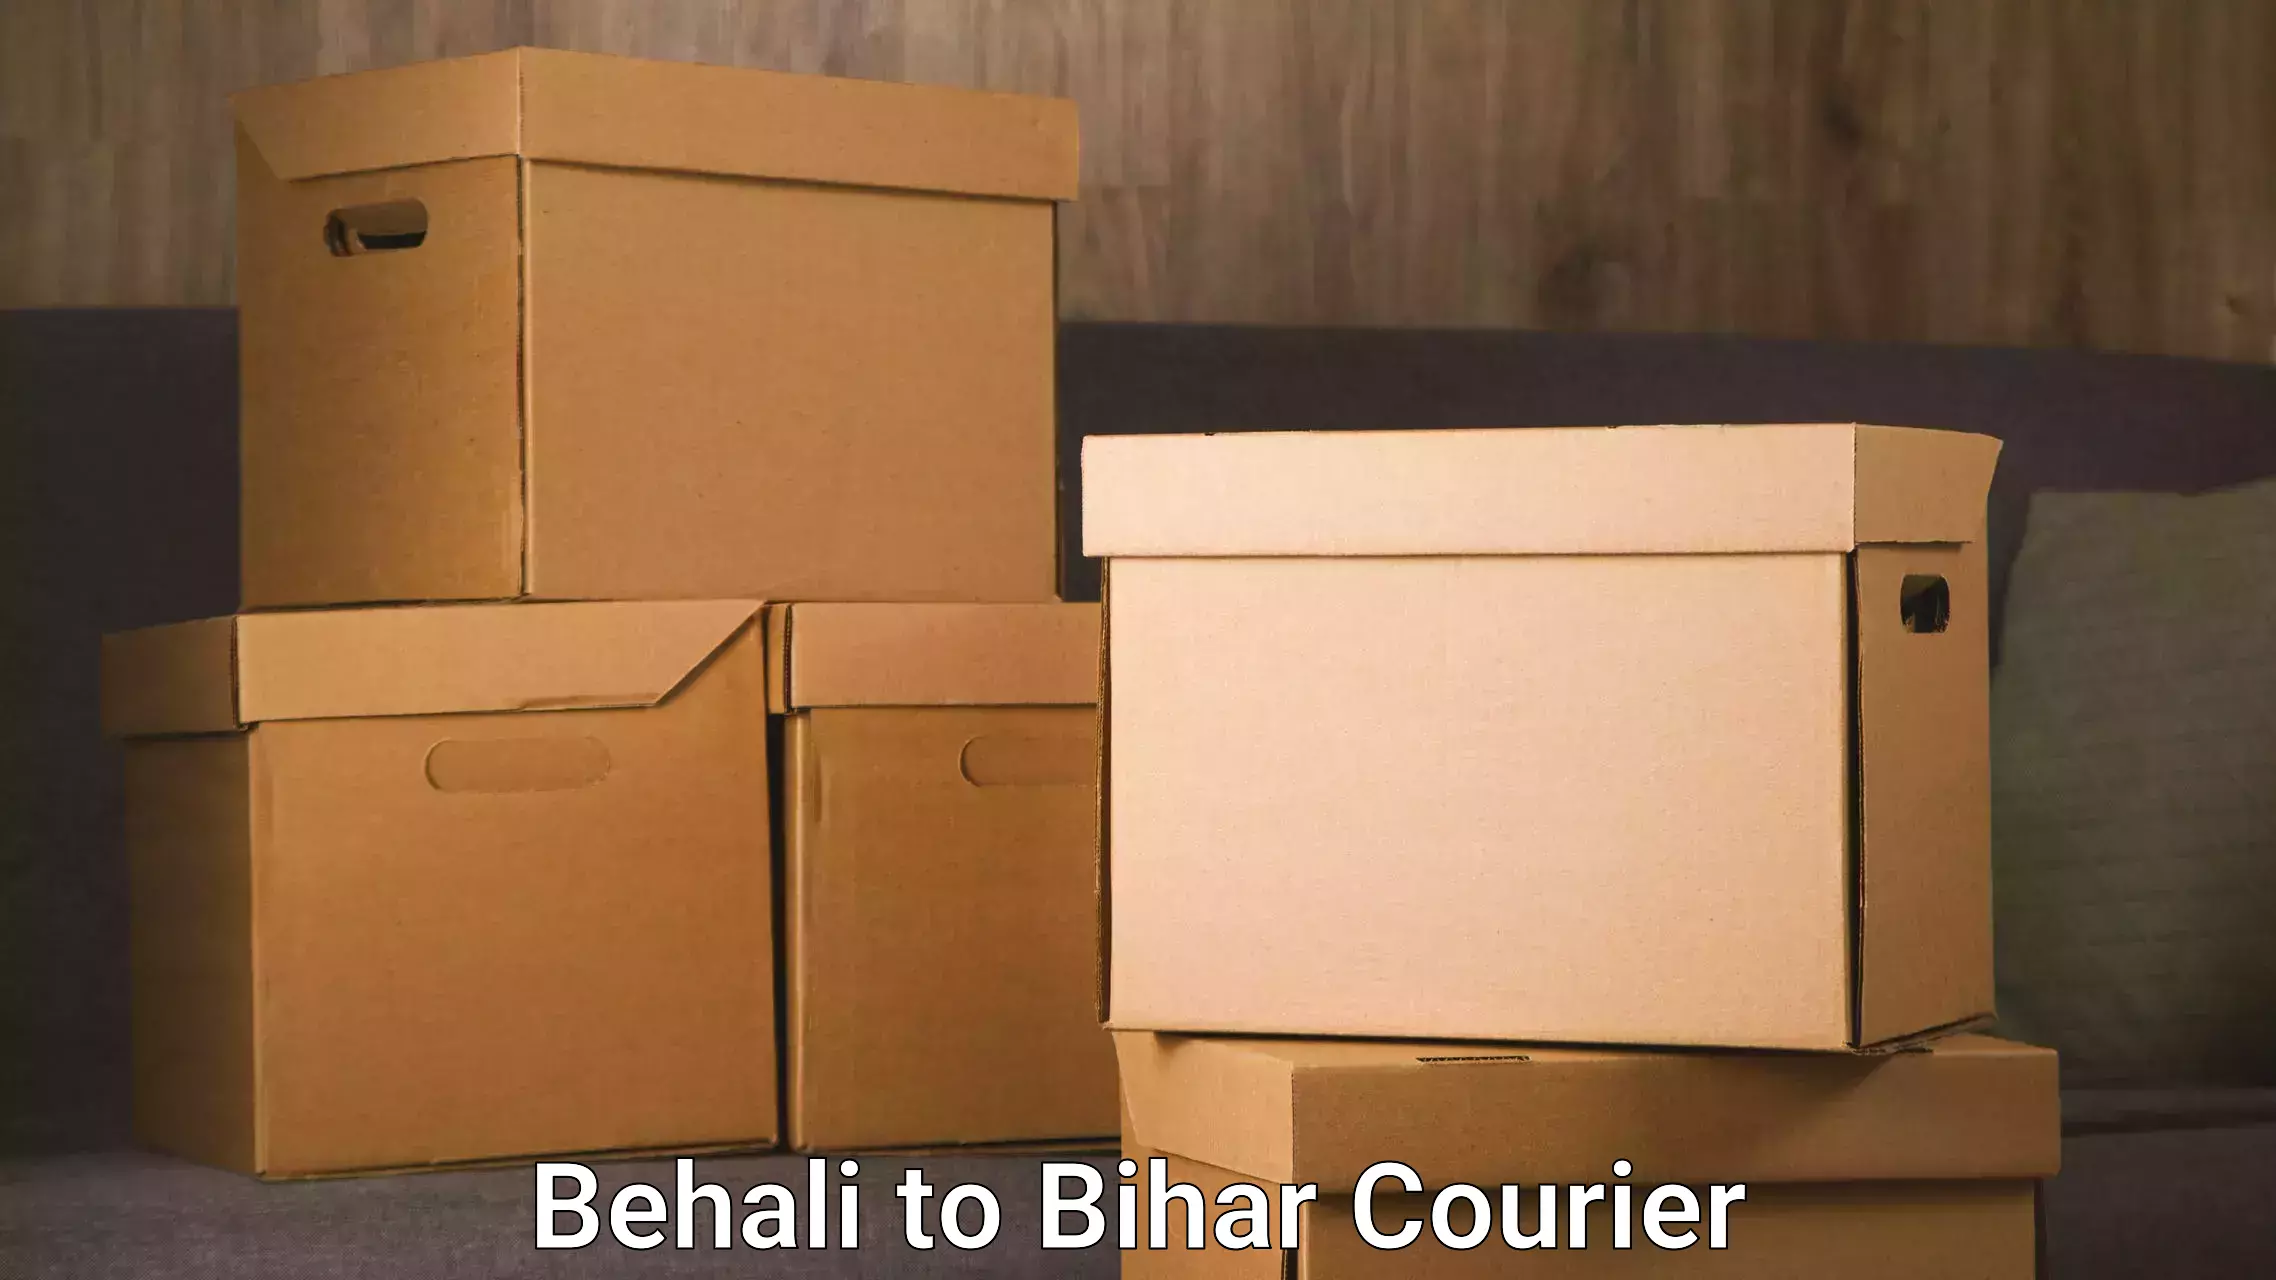 Nationwide courier service Behali to Bihar